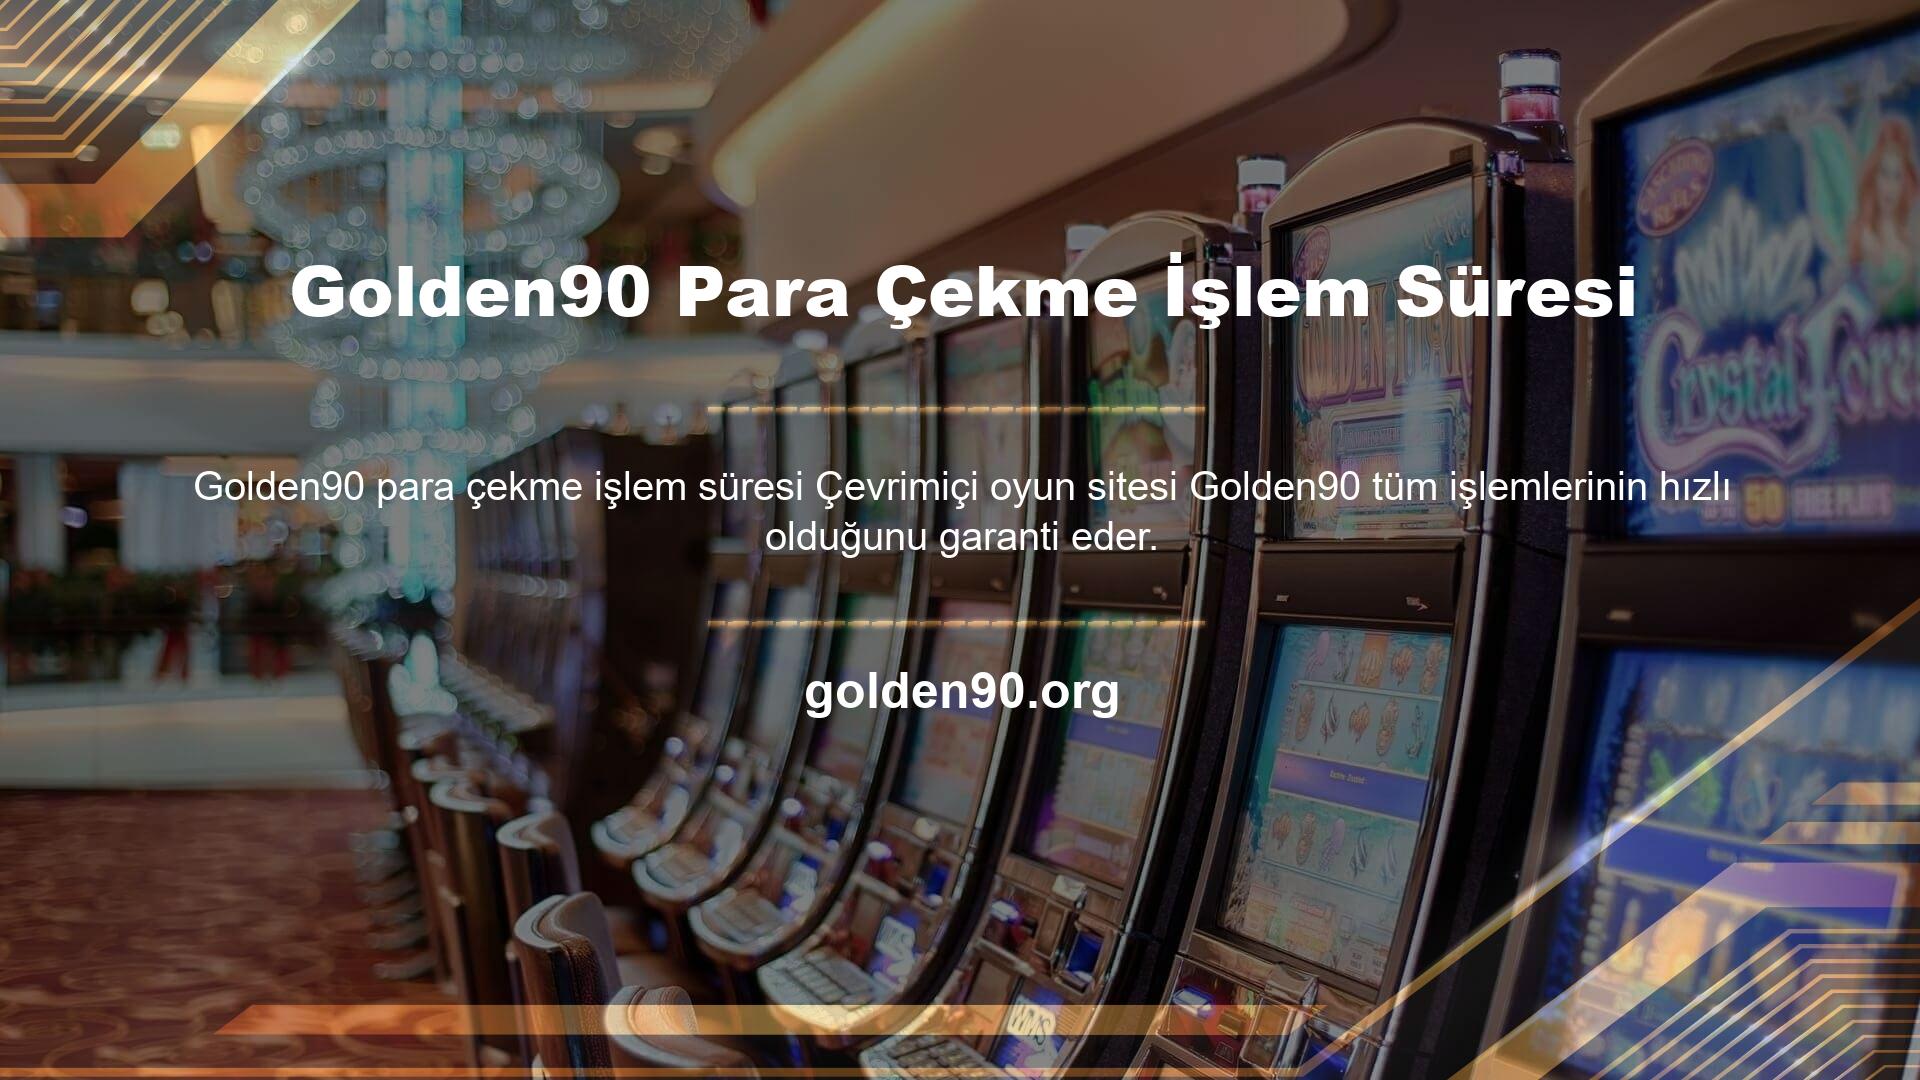 Golden90 para çekme işlemi gerçekleştiren ve para çekme limitlerini kısa sürede alan kullanıcılar, Golden90 bahis sitelerine daha fazla güvenmektedir